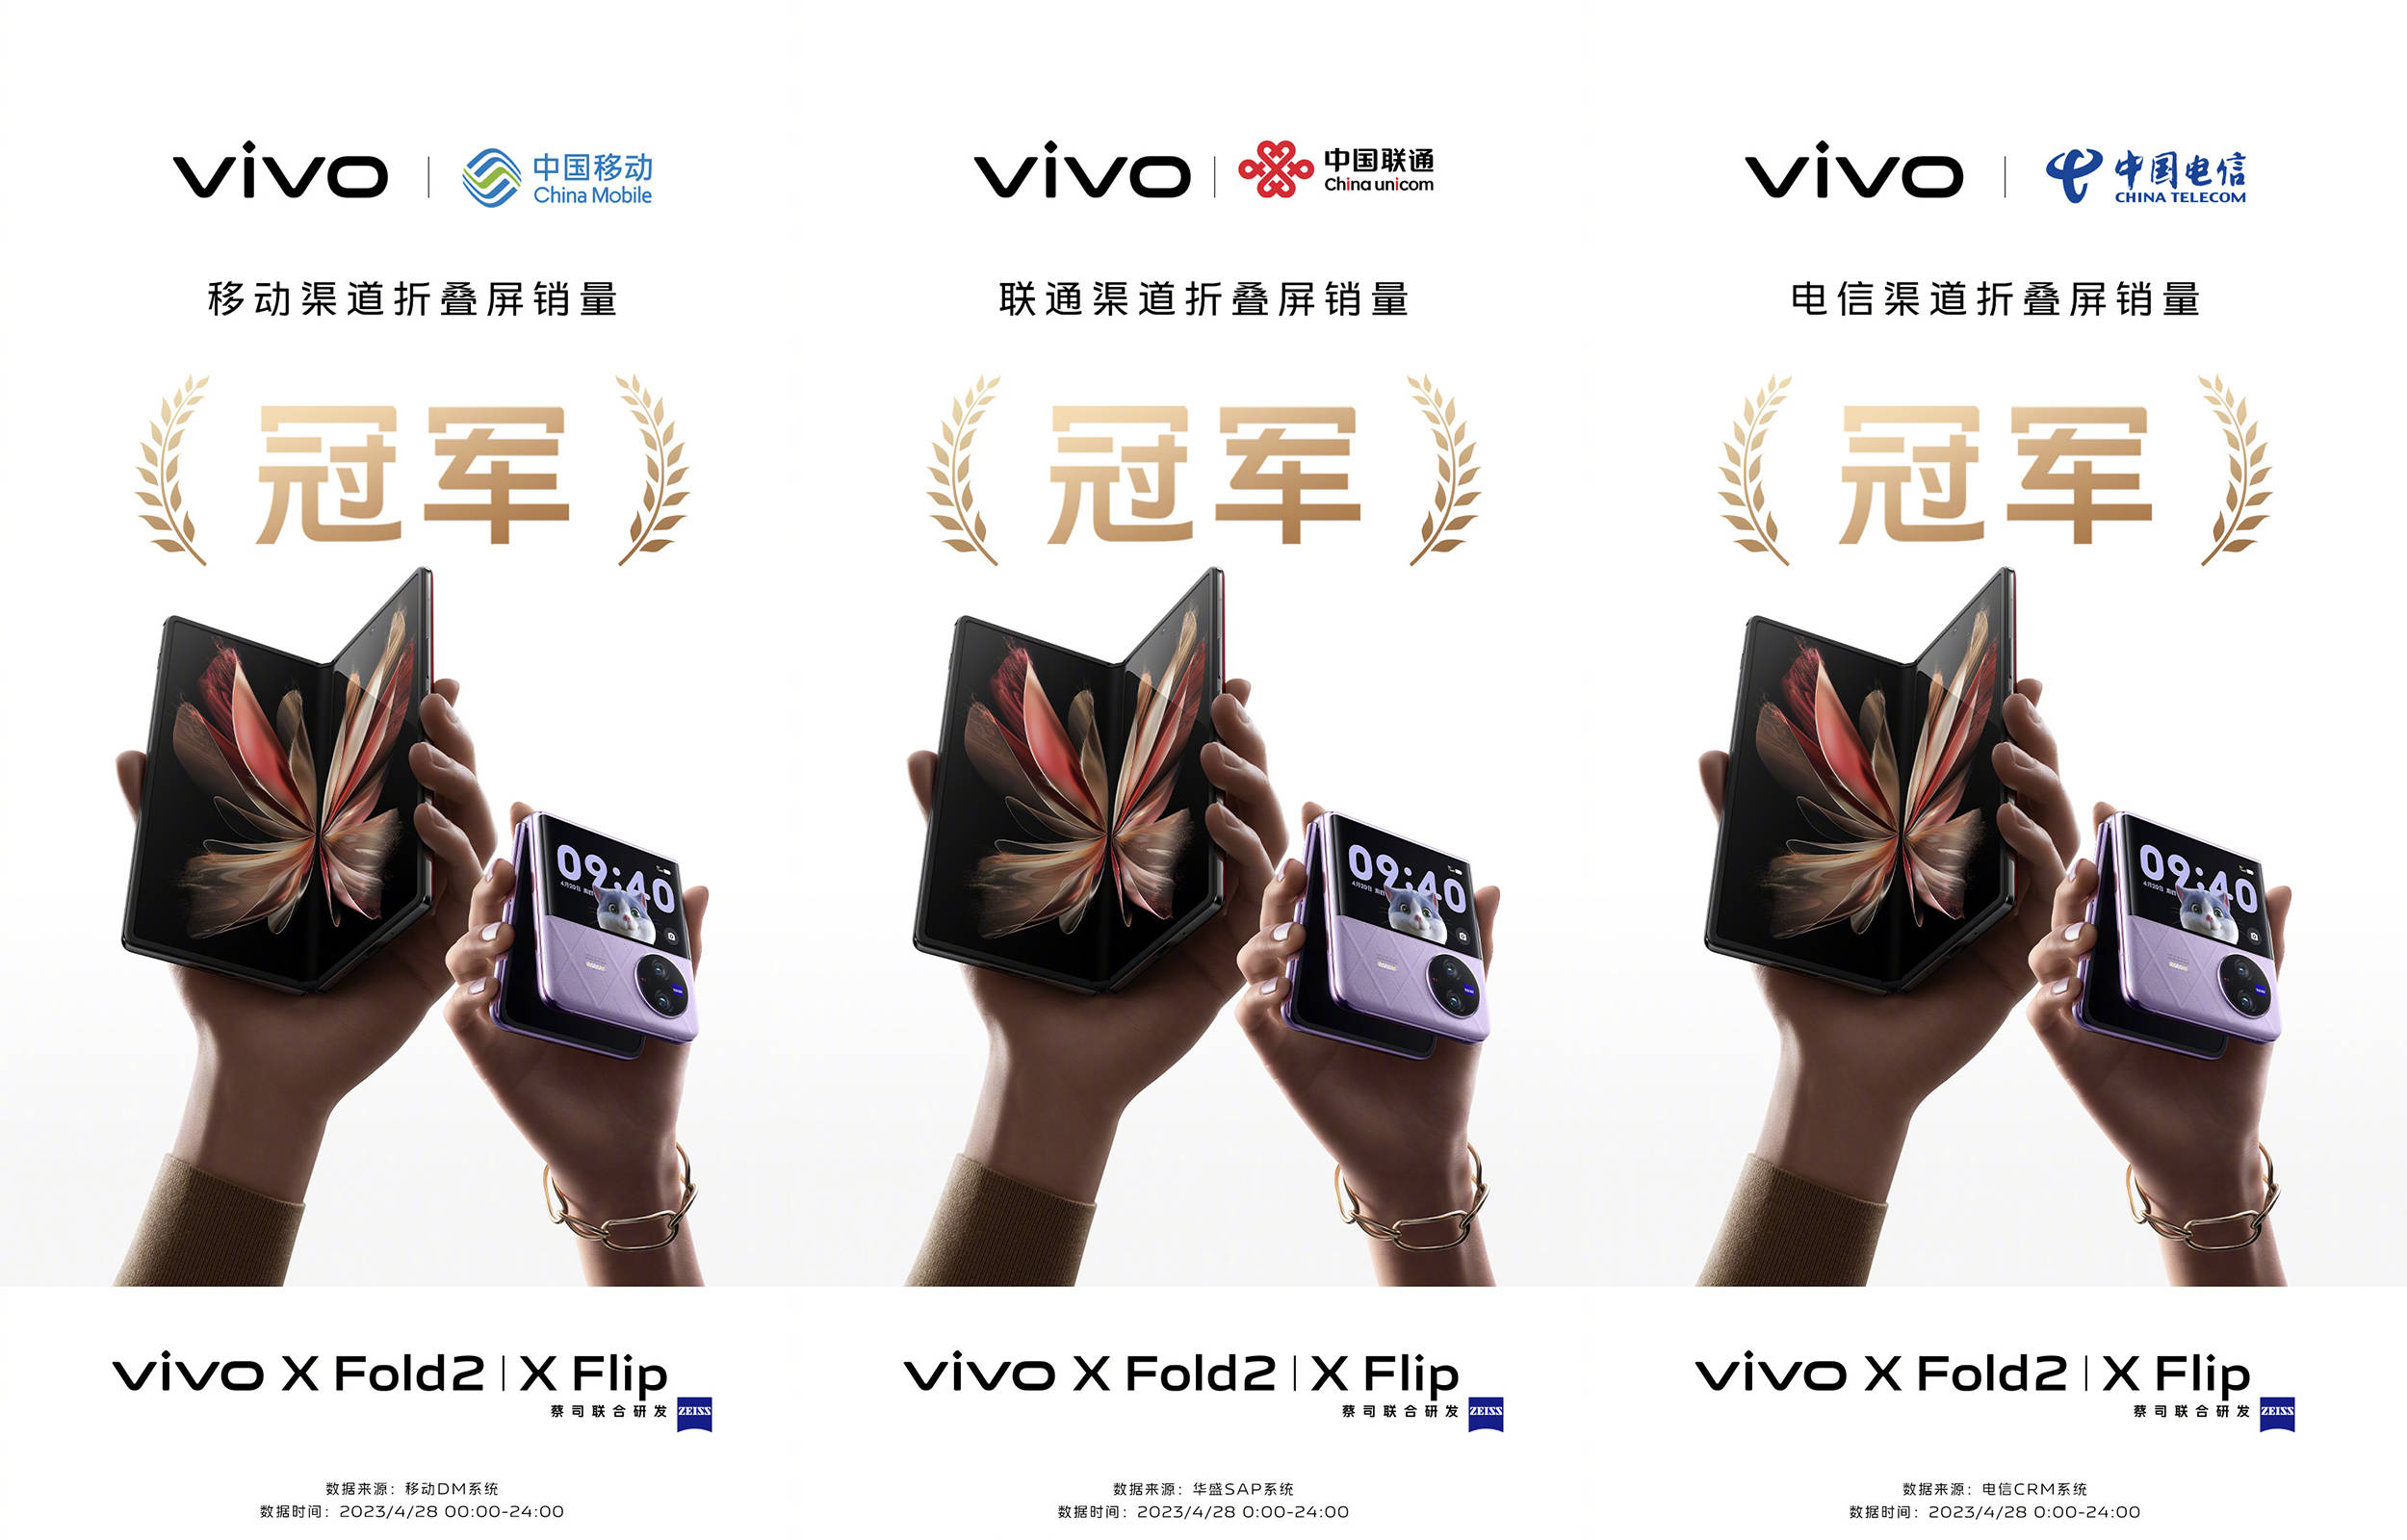 电影手机:用手机也能拍出电影感？可别不信，试试首销冠军vivo X Fold2 | X Flip